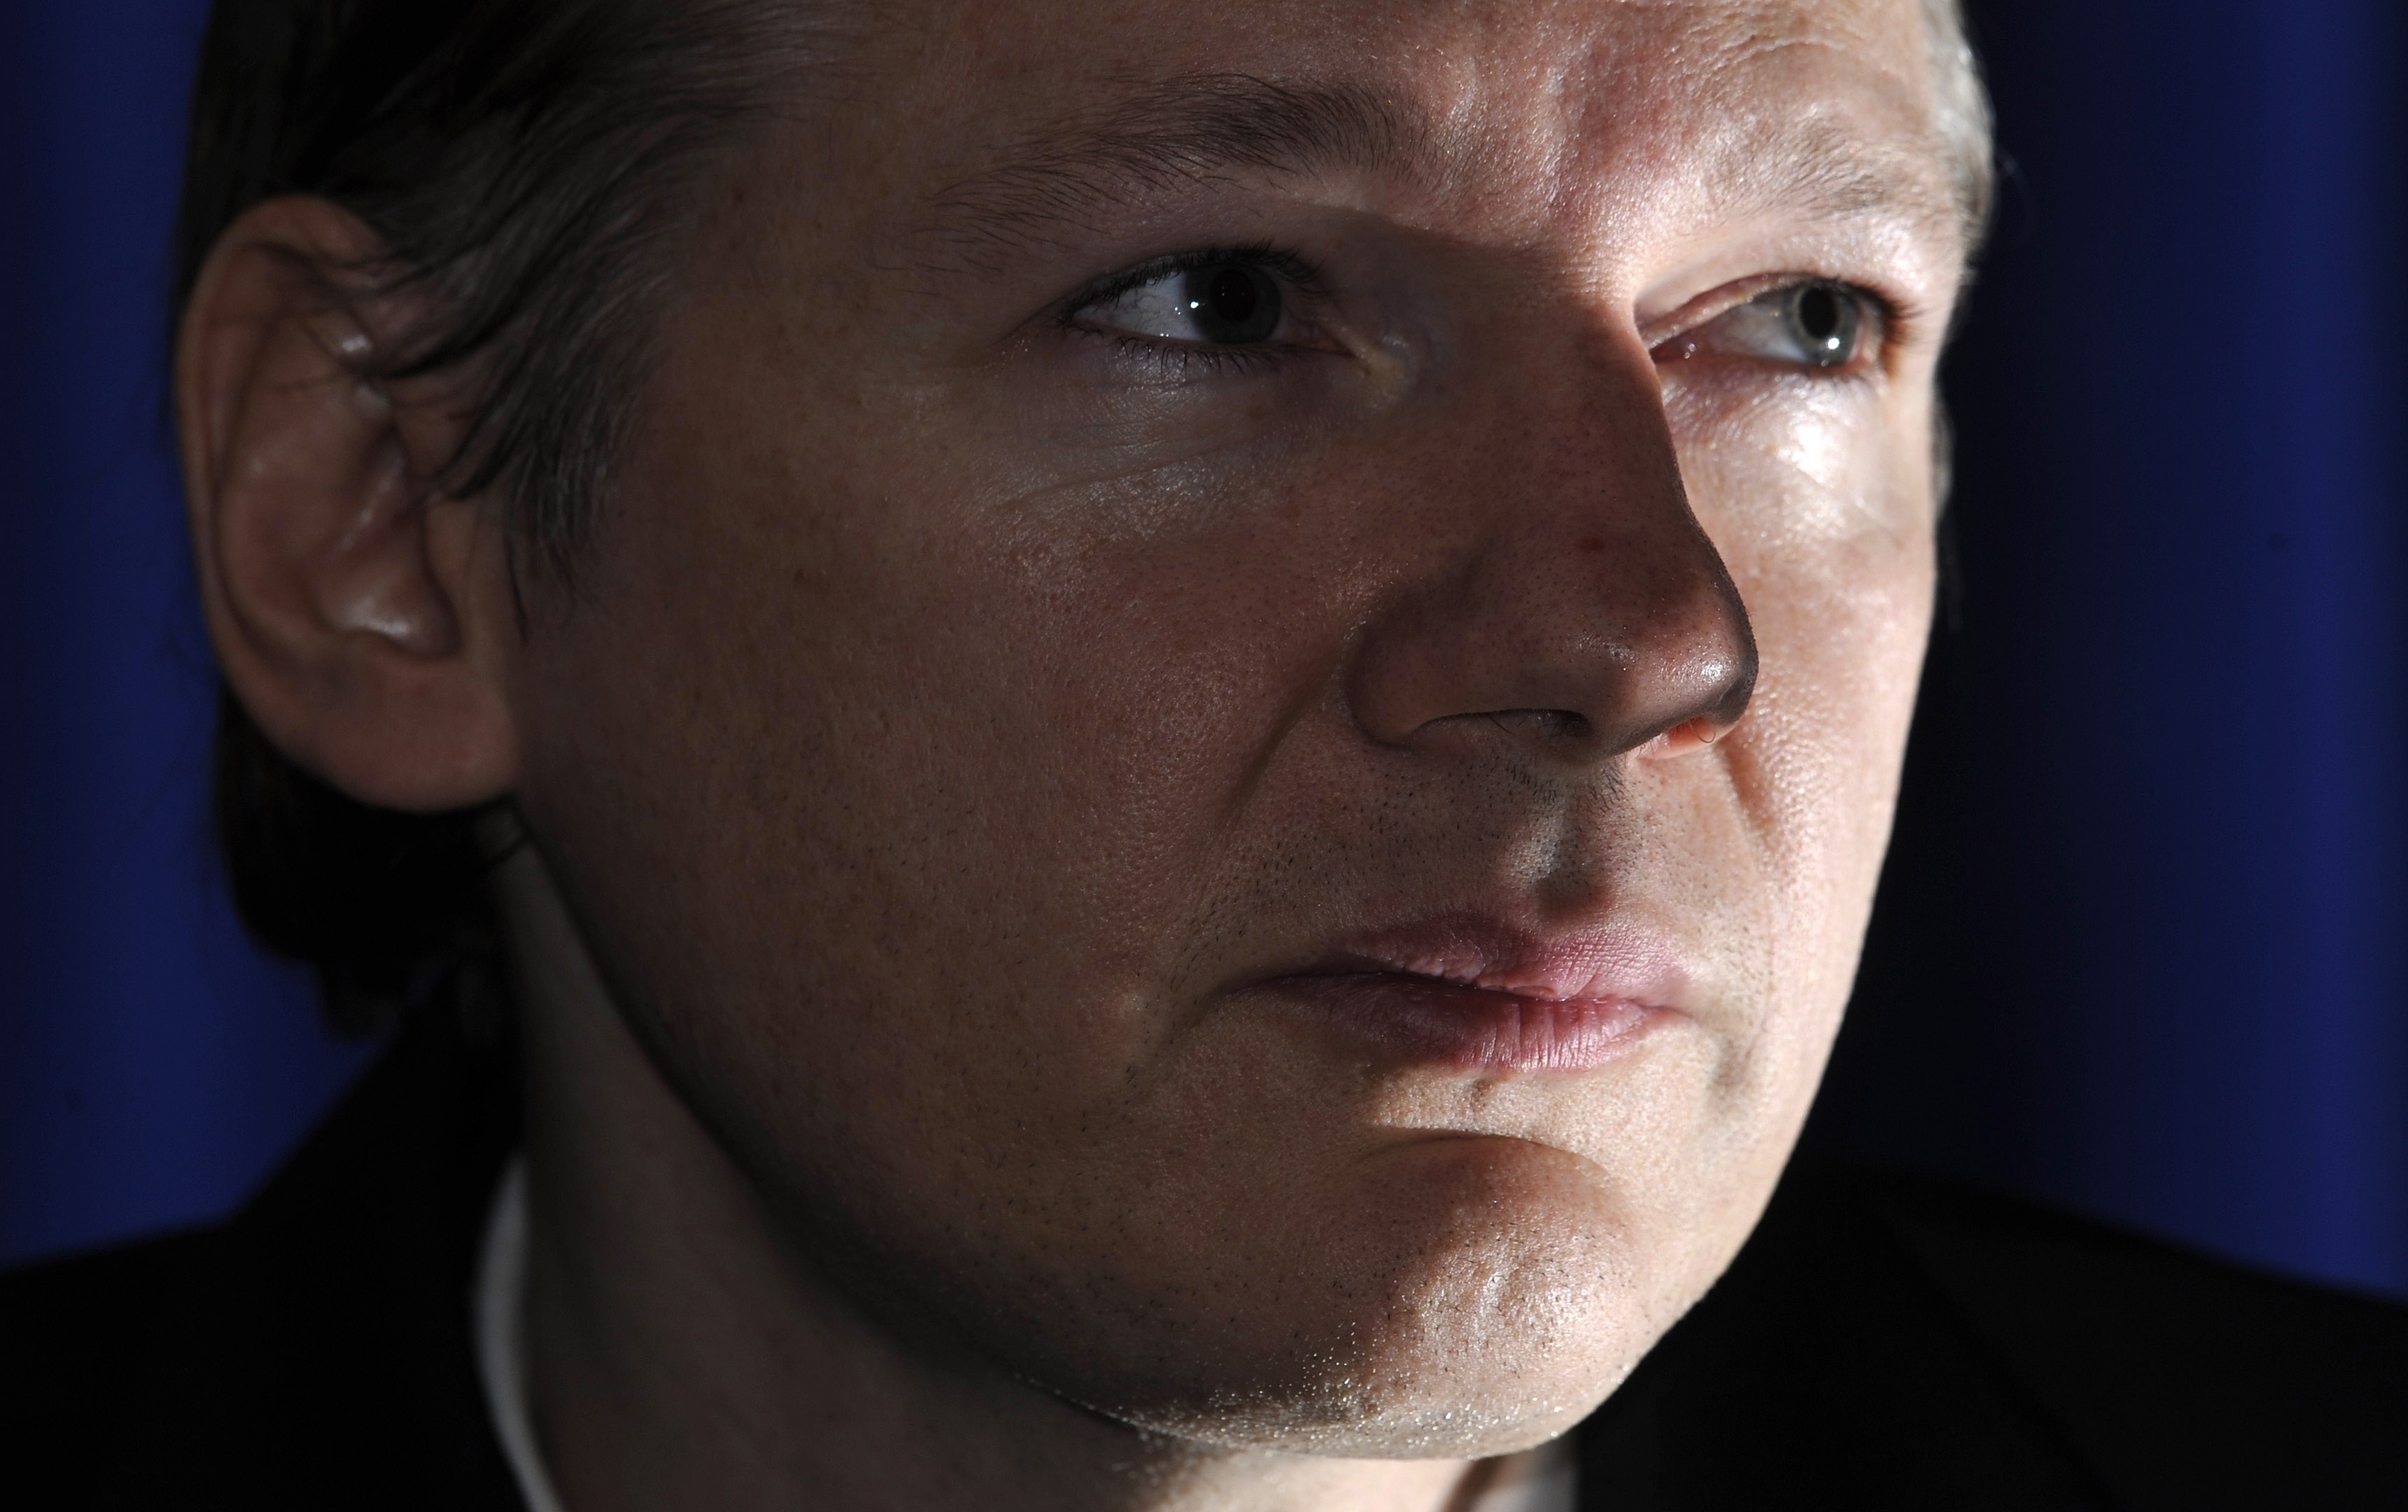 Sexualbrott, Brott och straff, Storbritannien, Julian Assange, Wikileaks, Sverige, Våldtäkt 